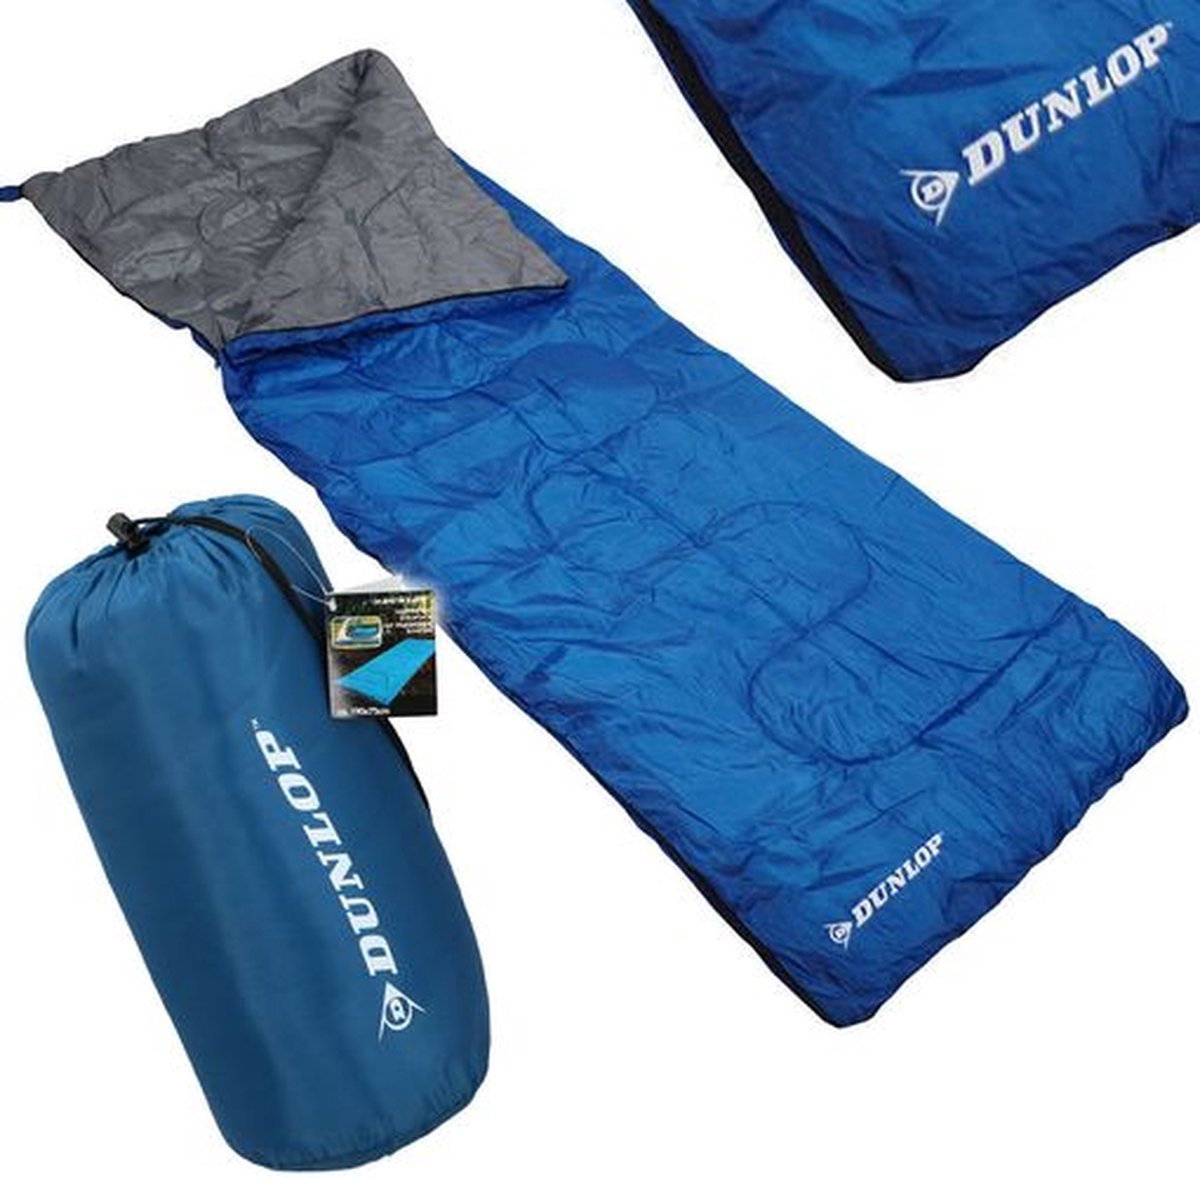 Slaapzak - slaapzaak 75 cm 175 cm opbergtas blauw mummieslaapzakken -sleeping bag -Unisex Mummy sleeping bag